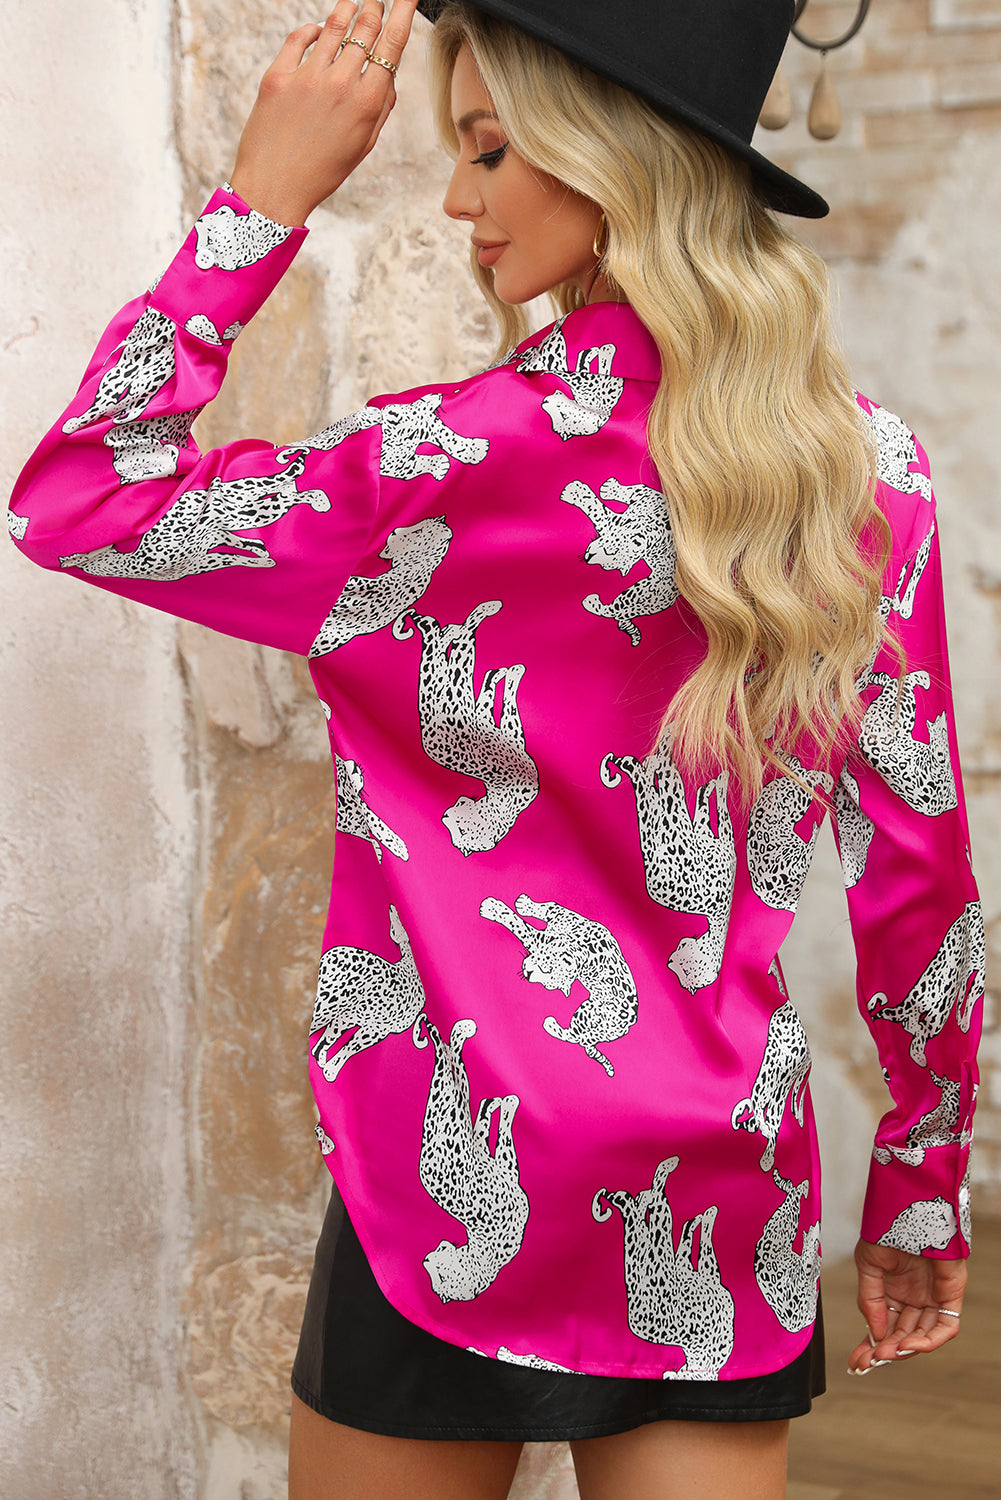 Prednja košulja s ružičastim leopard printom i gumbima